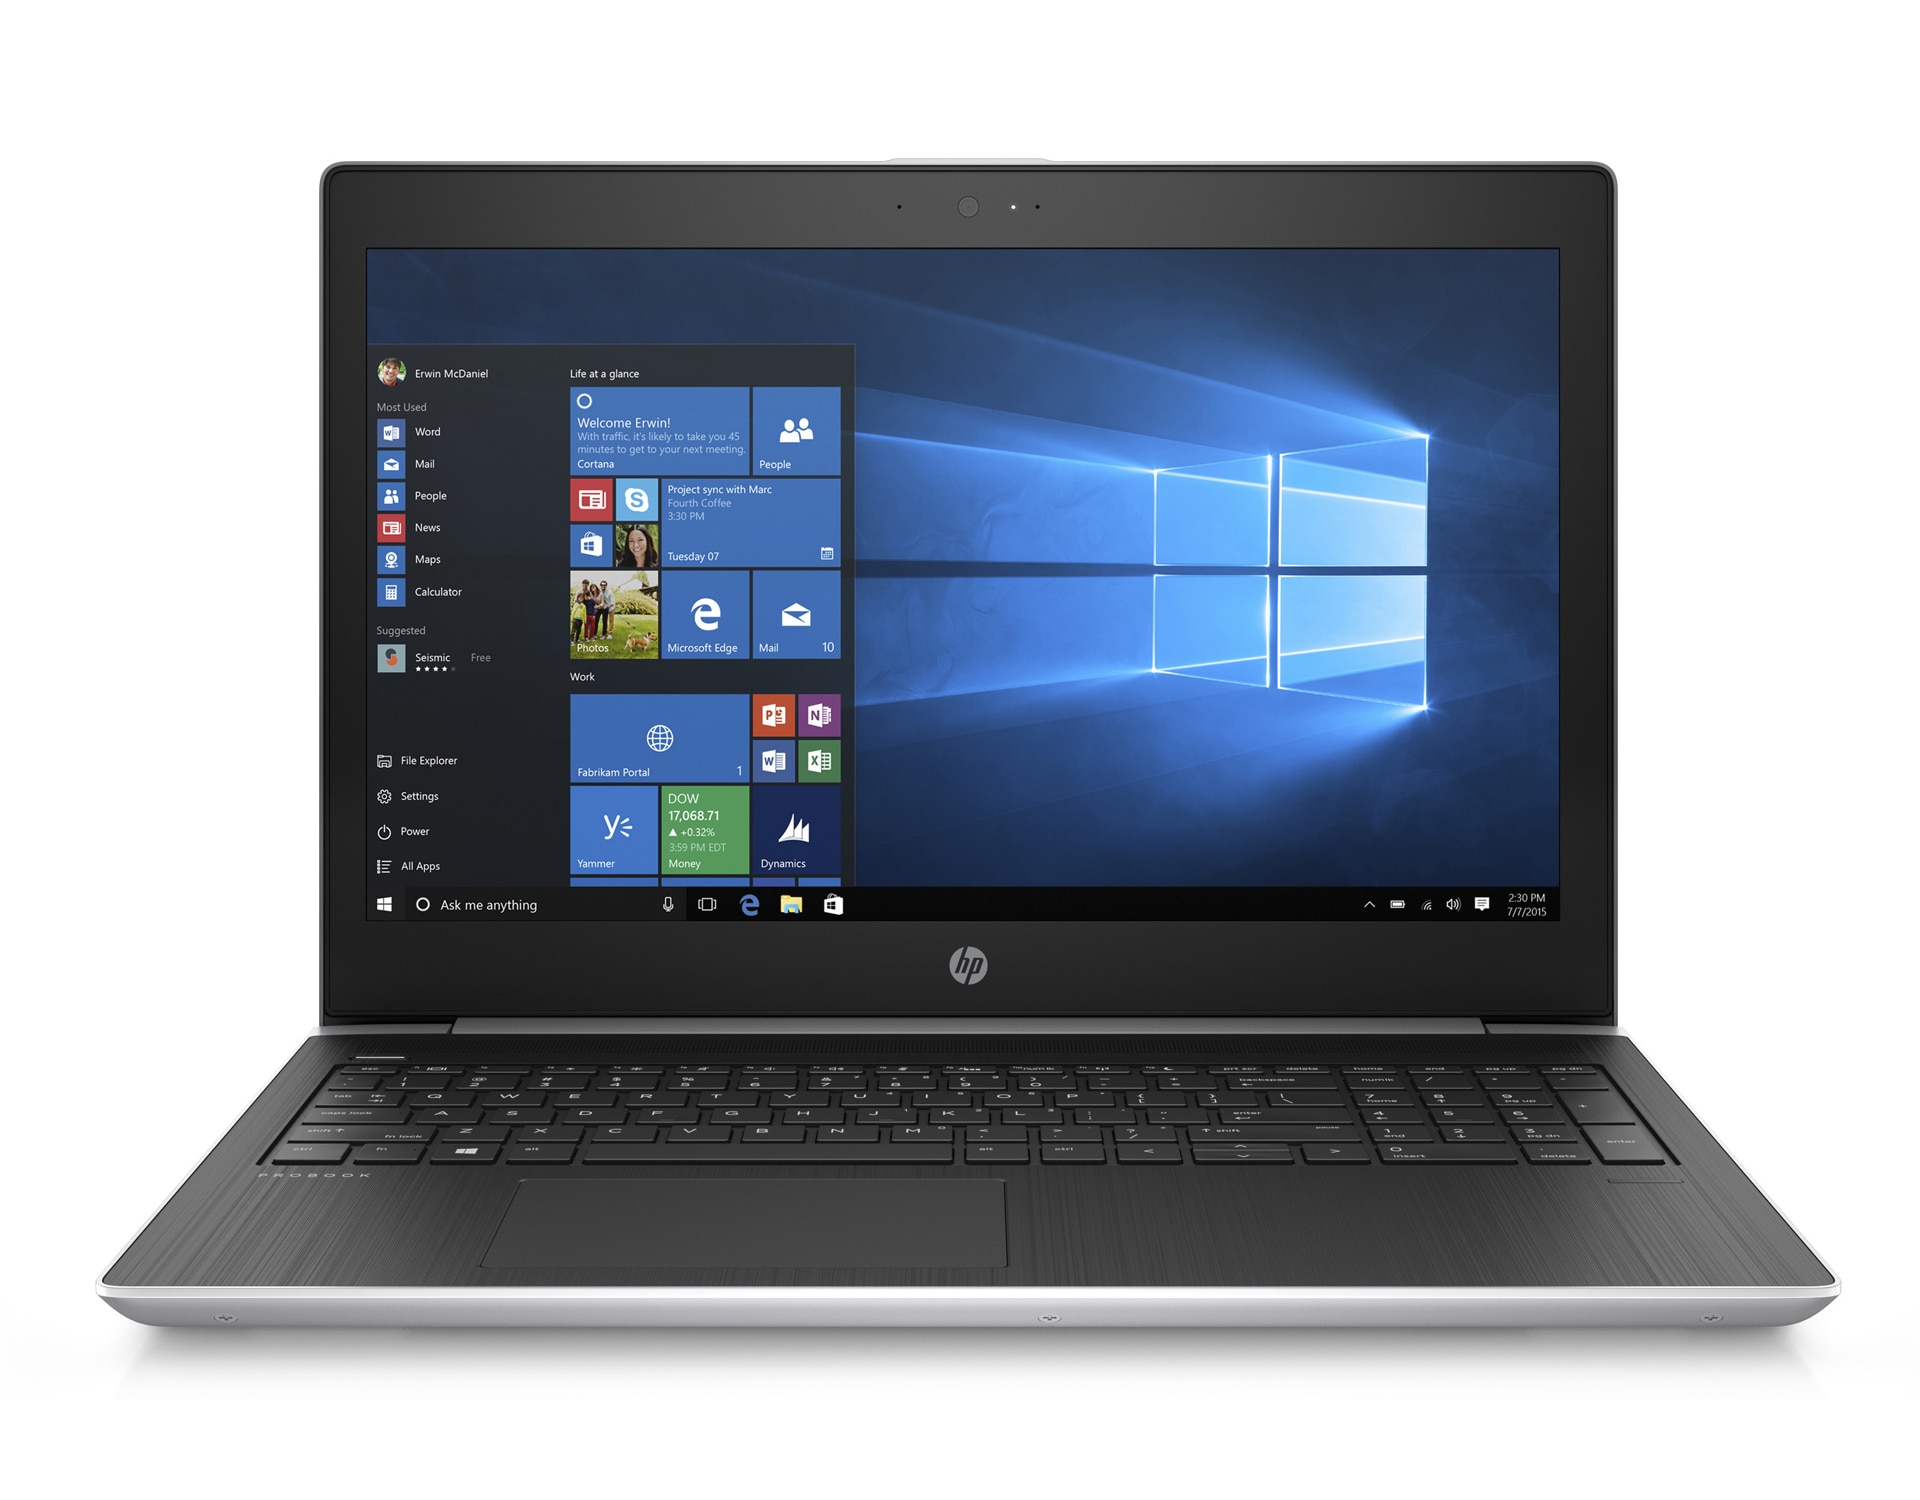 【大画面17.3インチ】 【高スペック】 HP ProBook 470 G5 第8世代 Core i7 7500U/2.70GHz 16GB SSD120GB M.2 Windows10 64bit WPSOffice 17.3インチ フルHD カメラ テンキー 無線LAN パソコン ノートパソコン PC Notebook